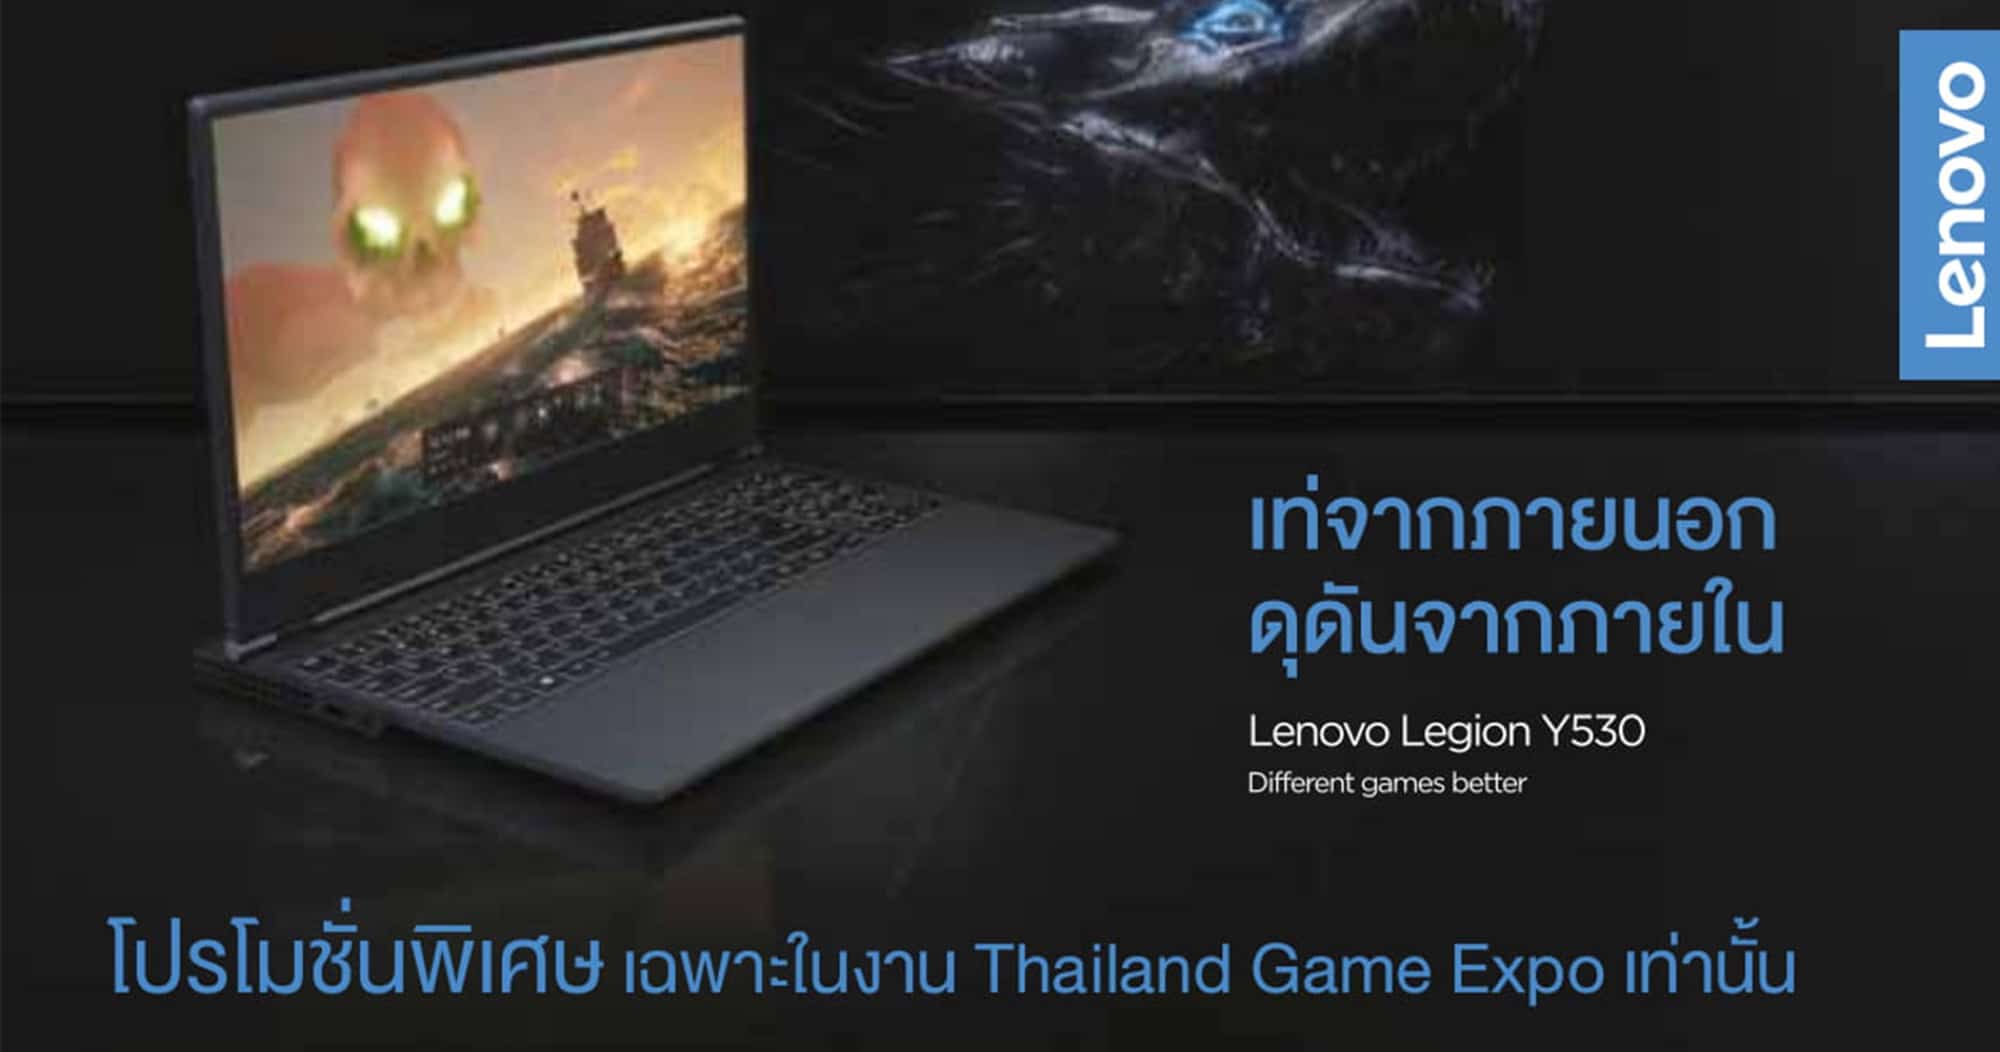 เลอโนโวท้าคอเกม PUBG ชิงรางวัล Lenovo Legion Y530 ที่งาน Thailand Game Expo 1